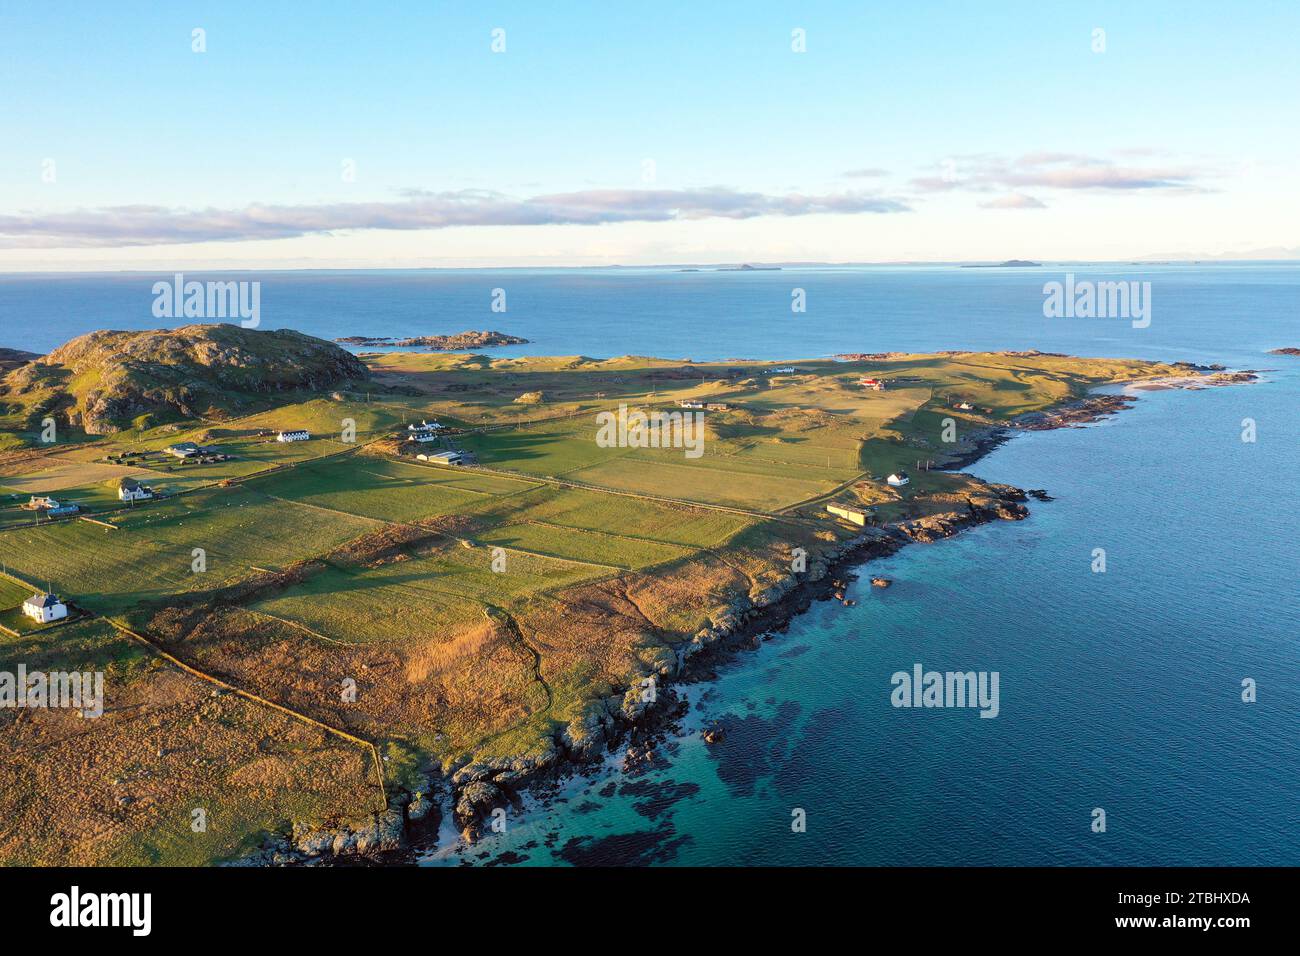 Vista aerea dell'estremità nord dell'isola di Iona che mostra Dun i, il punto più alto dell'isola, nelle Ebridi interne della Scozia Foto Stock